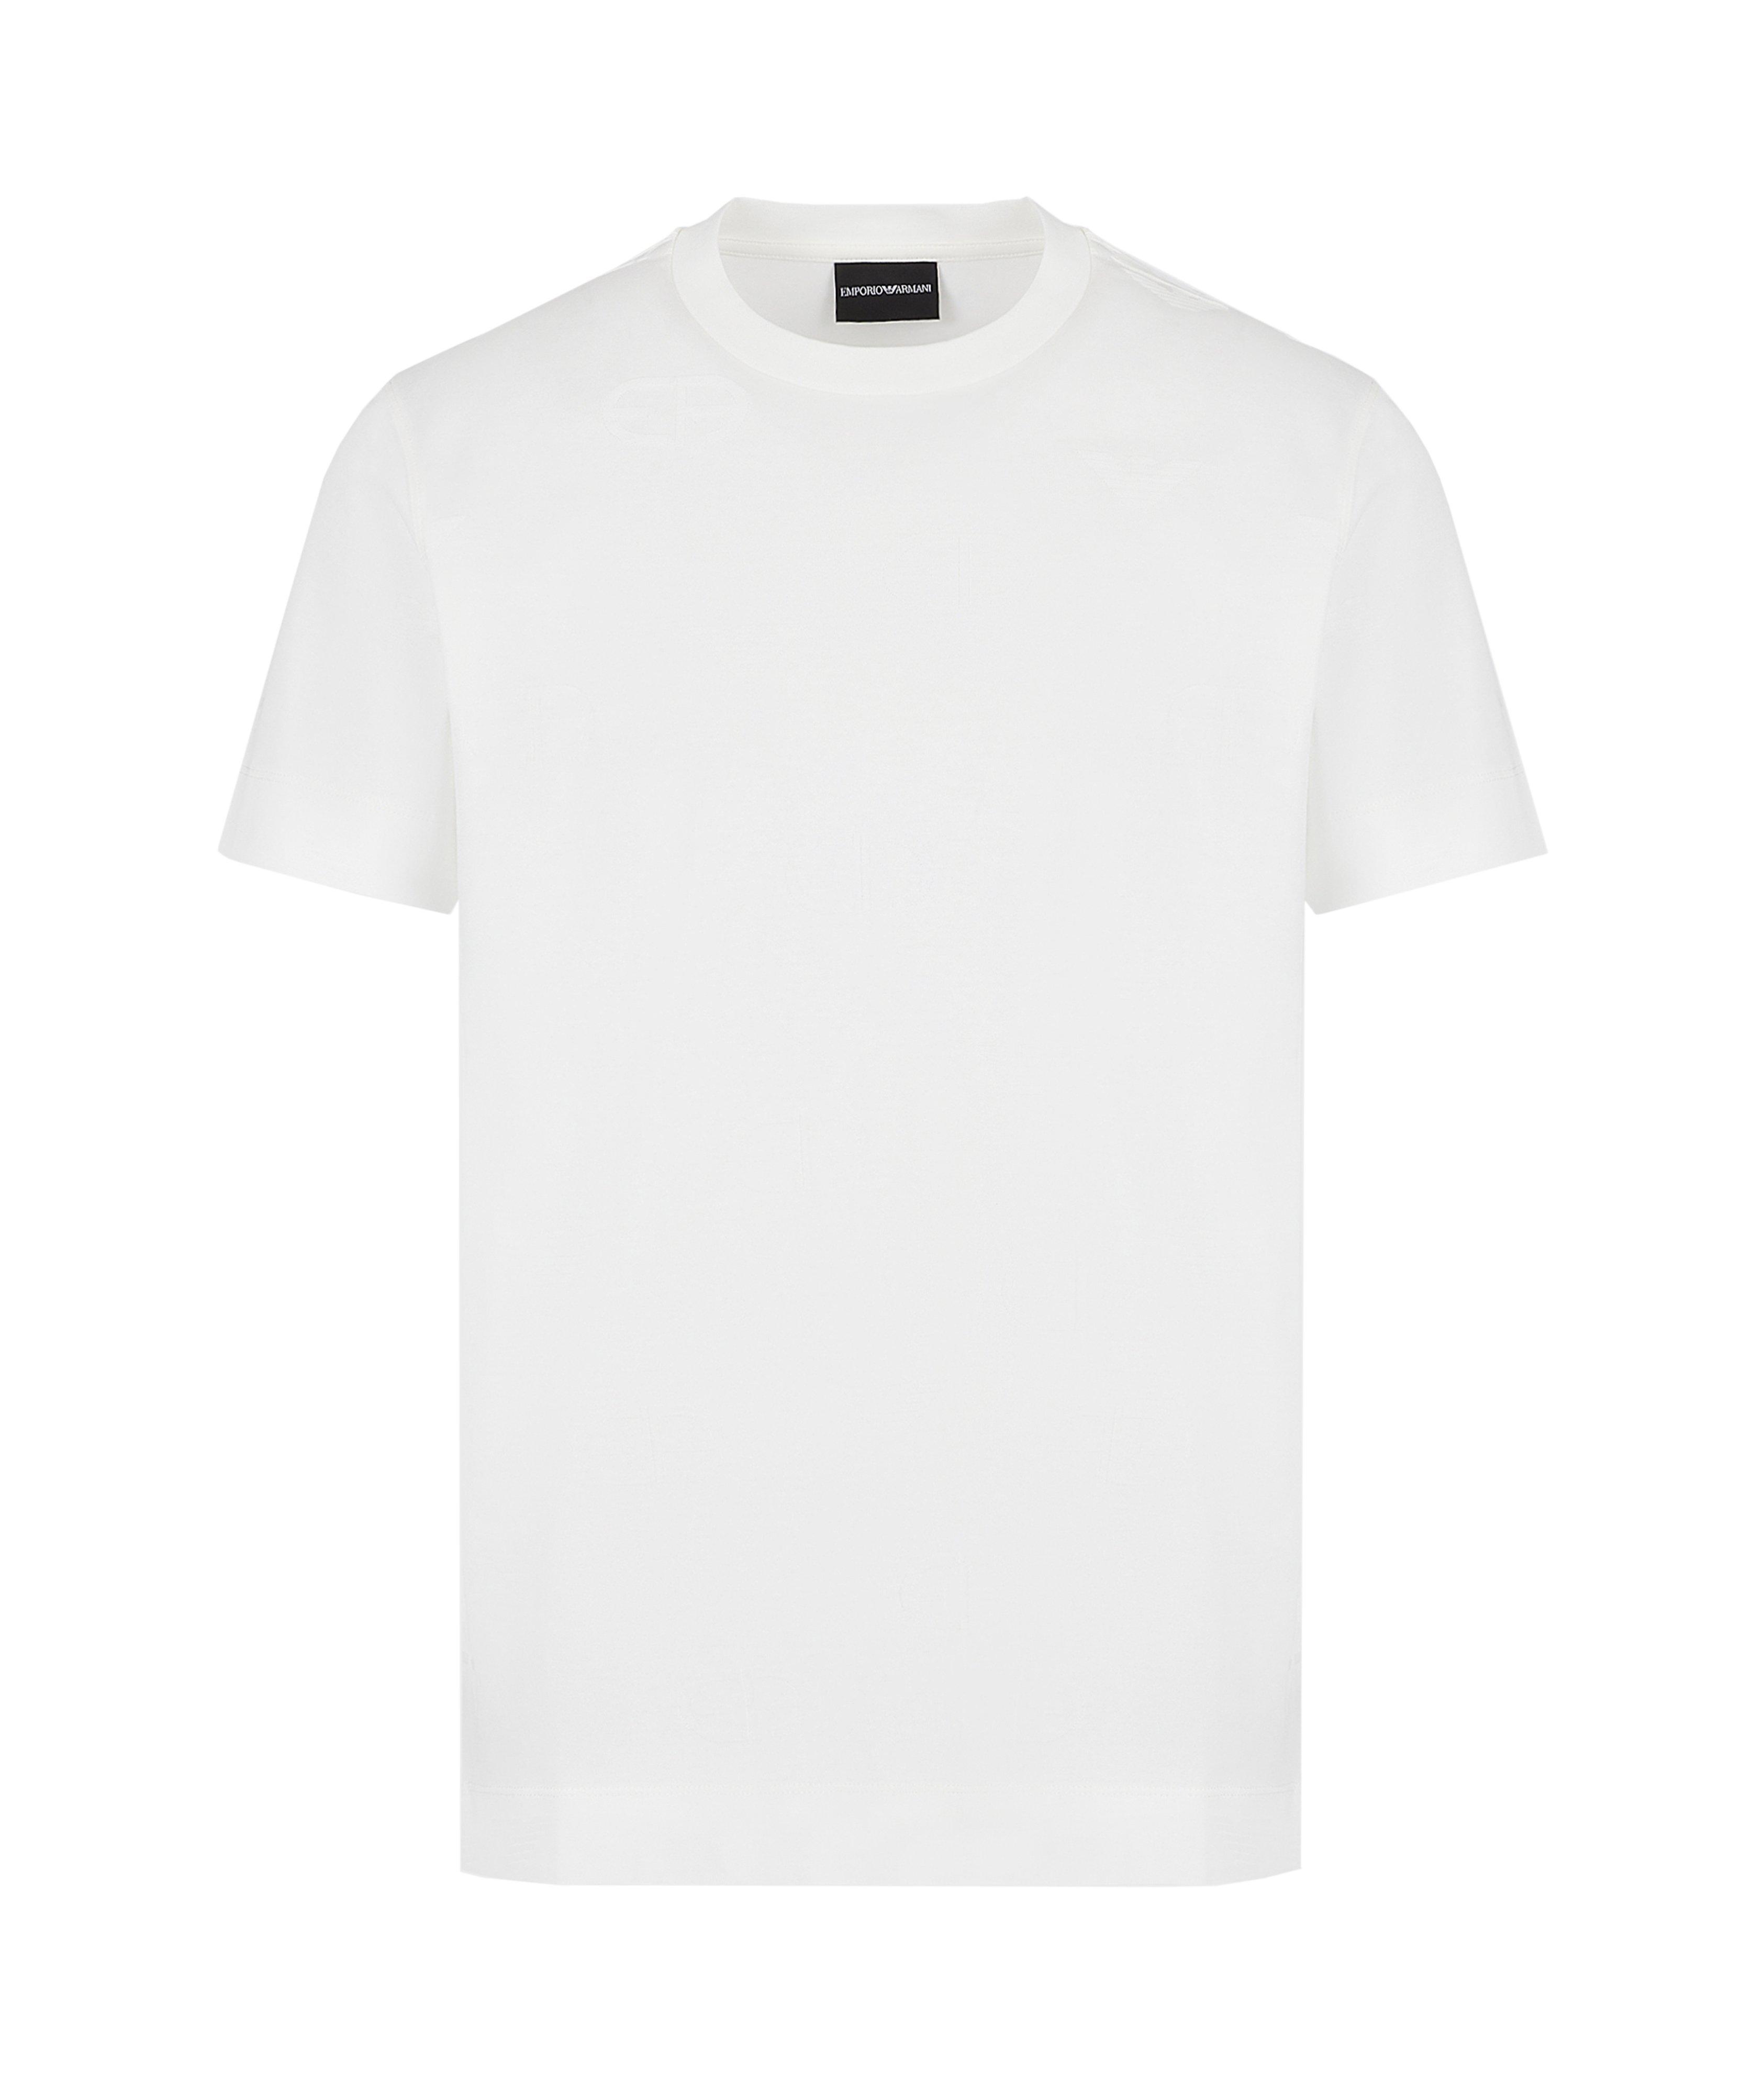 Jersey T-Shirt Embossed Intarsia-Knit Logo image 0